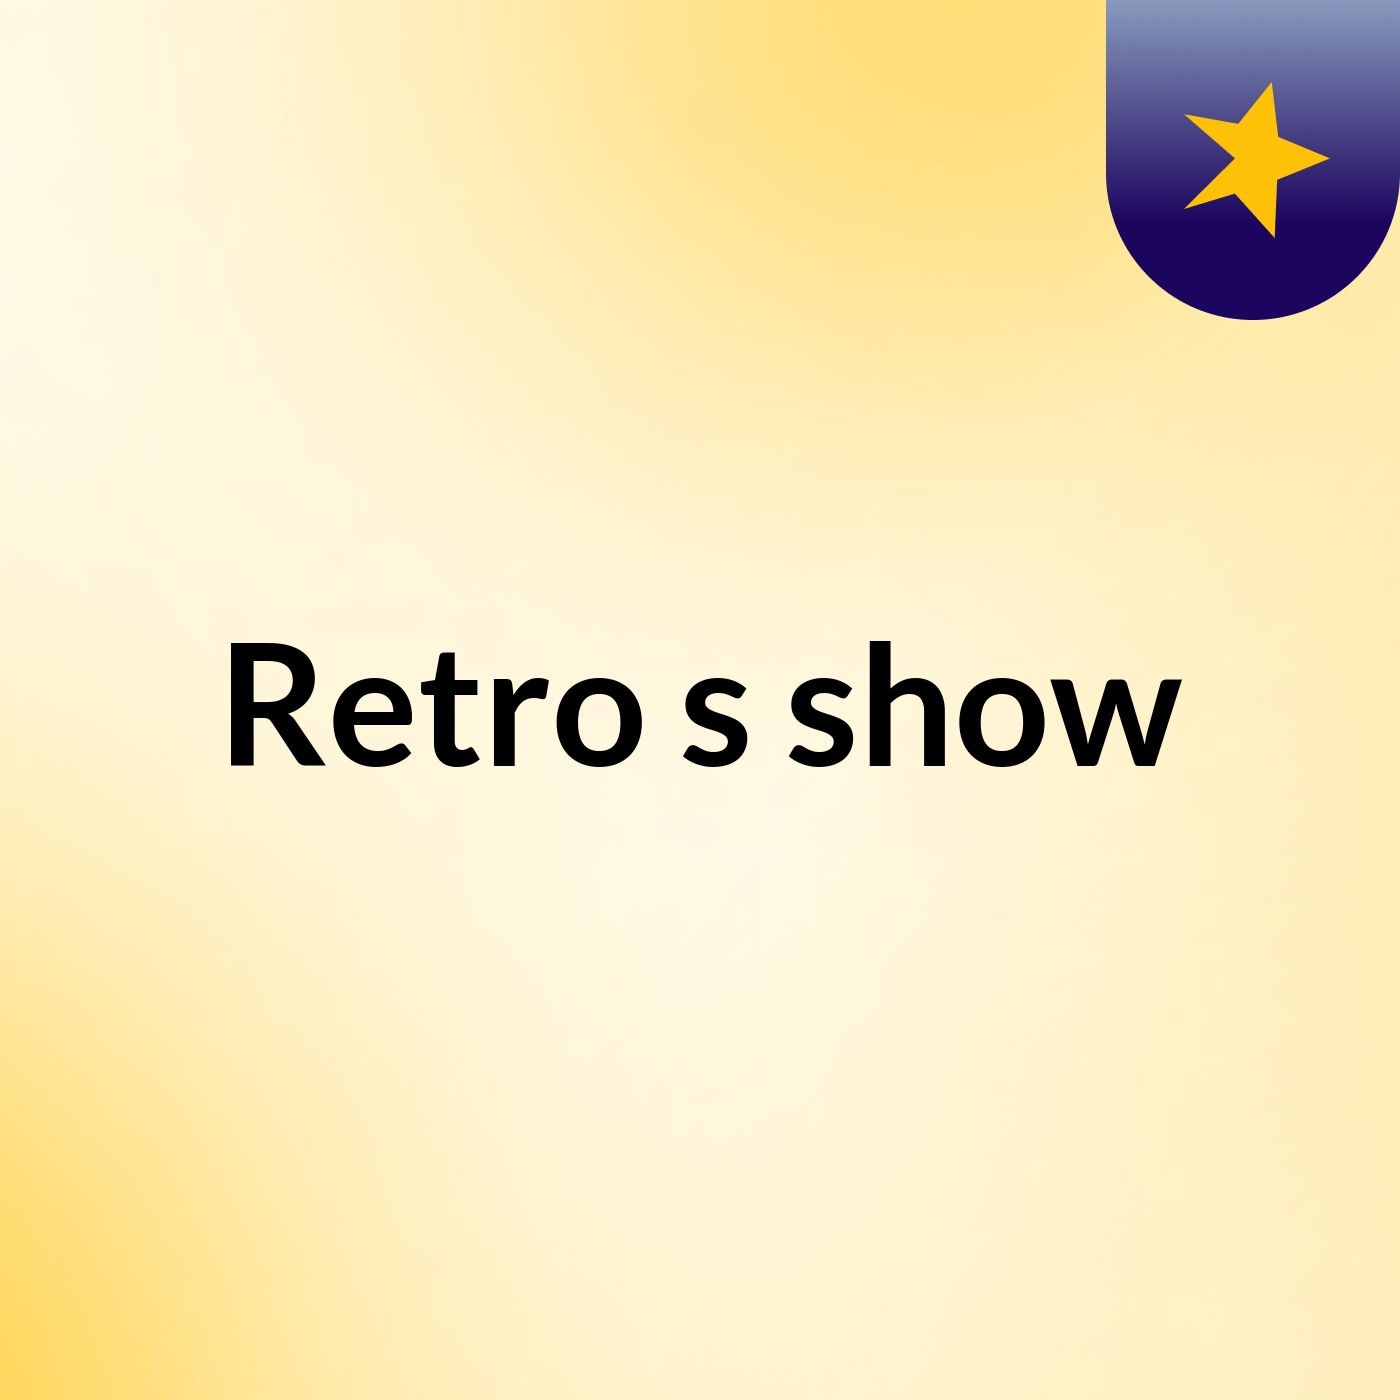 Retro's show